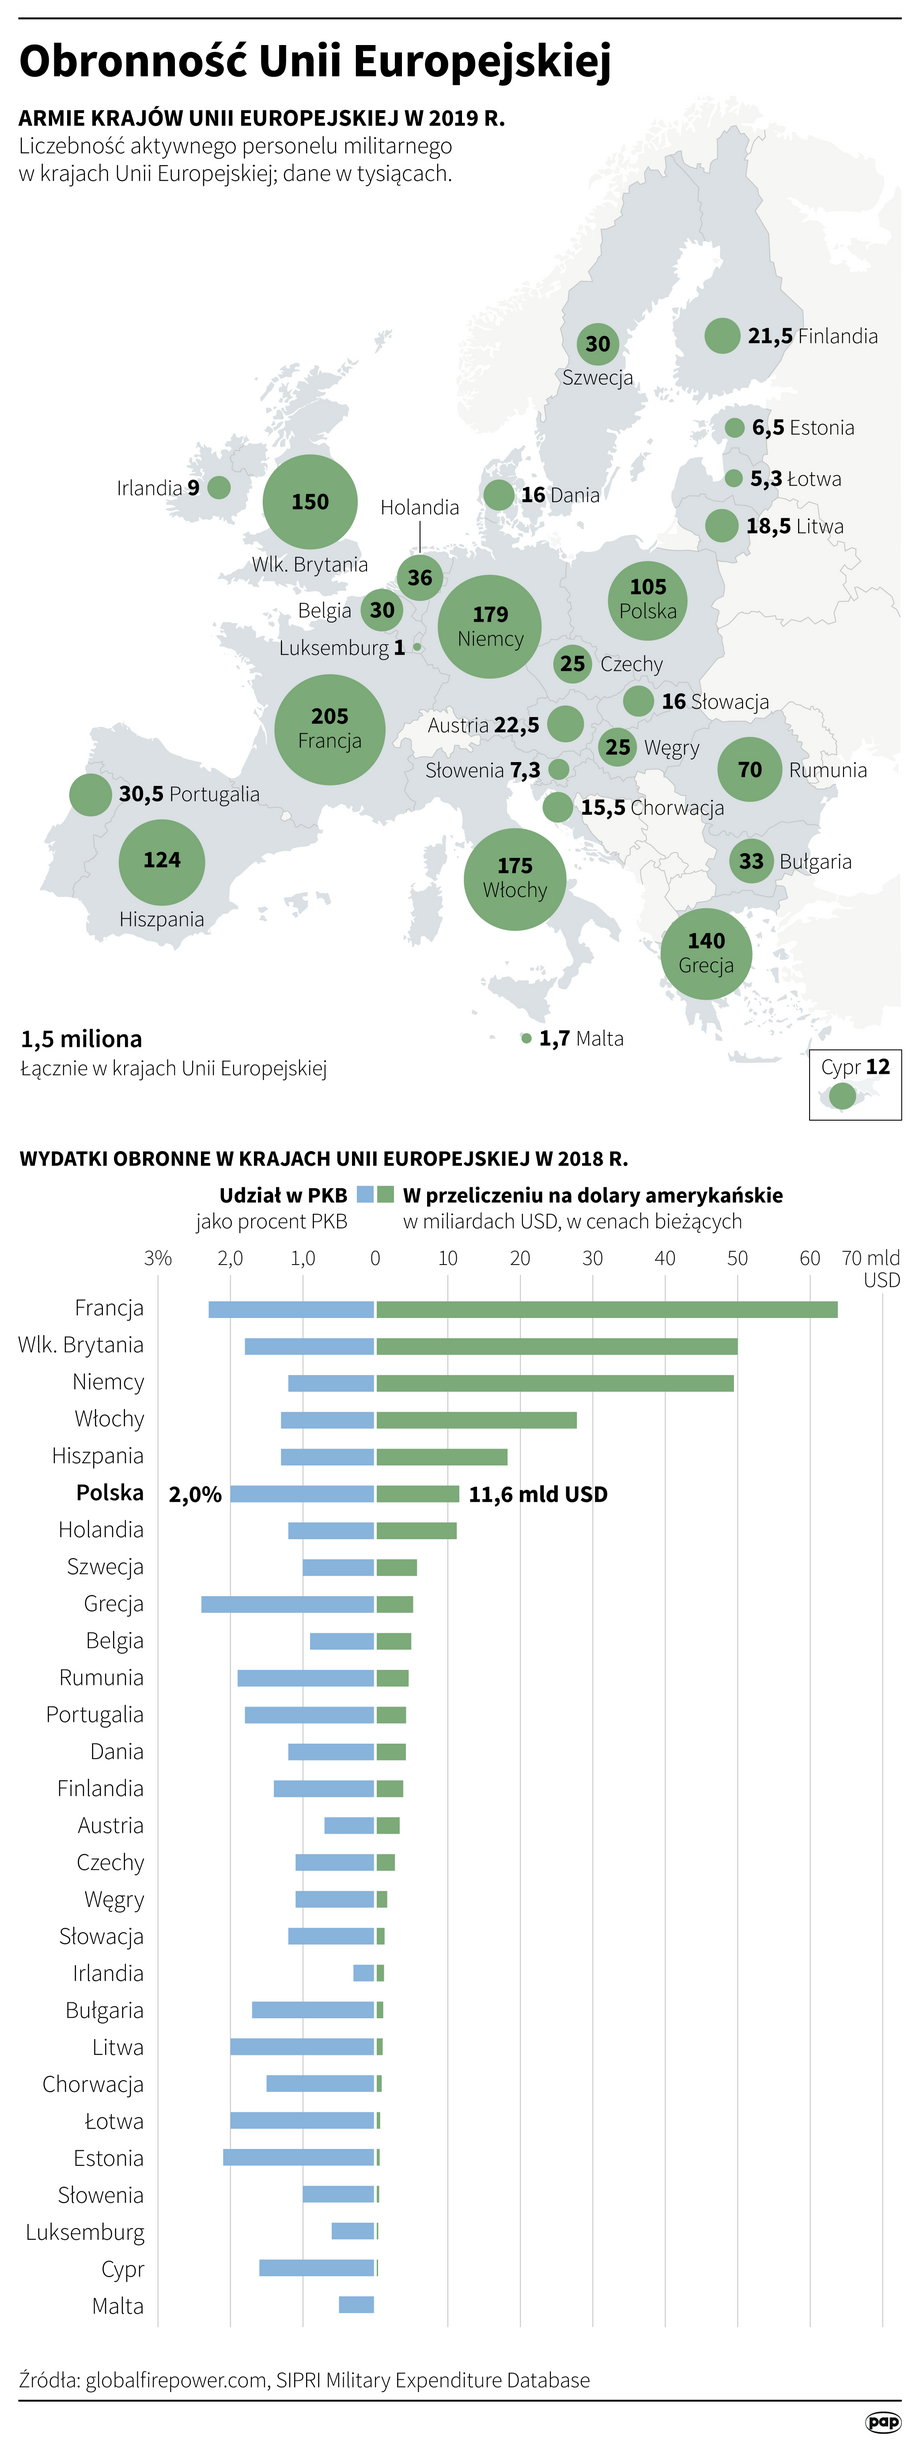 Wydatki na obronność w krajach Unii Europejskiej w 2018 roku